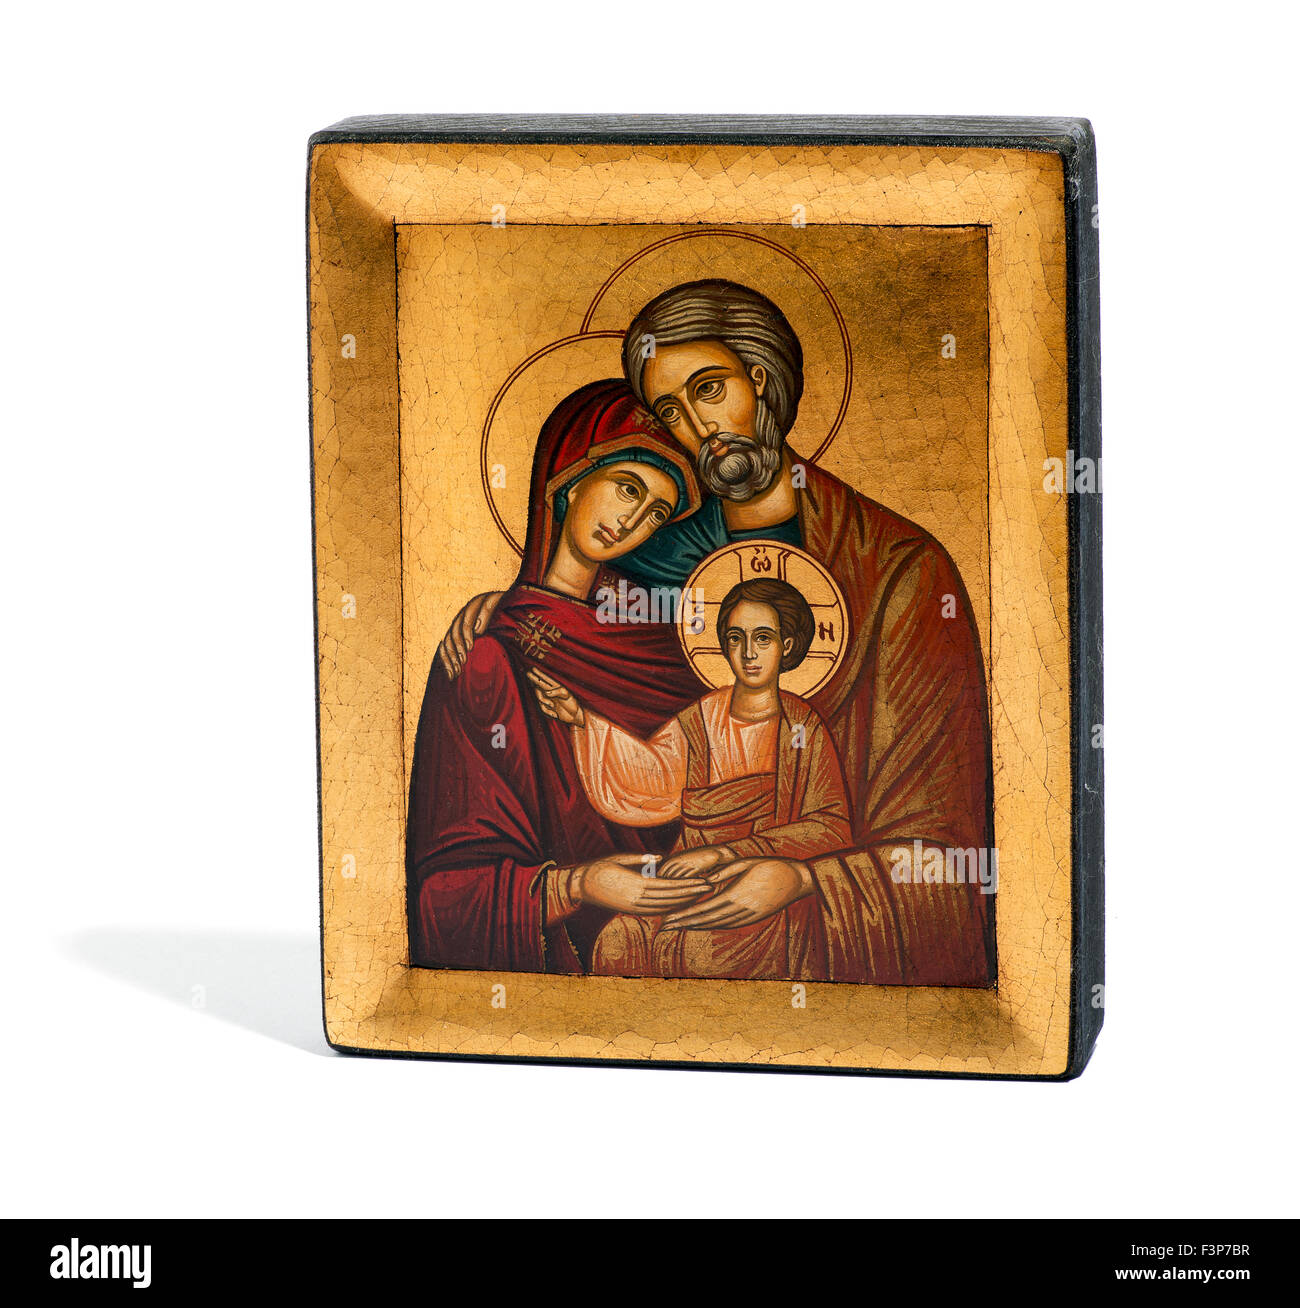 En bois peint doré icône religieuse de Joseph, Marie et l'enfant Jésus Banque D'Images